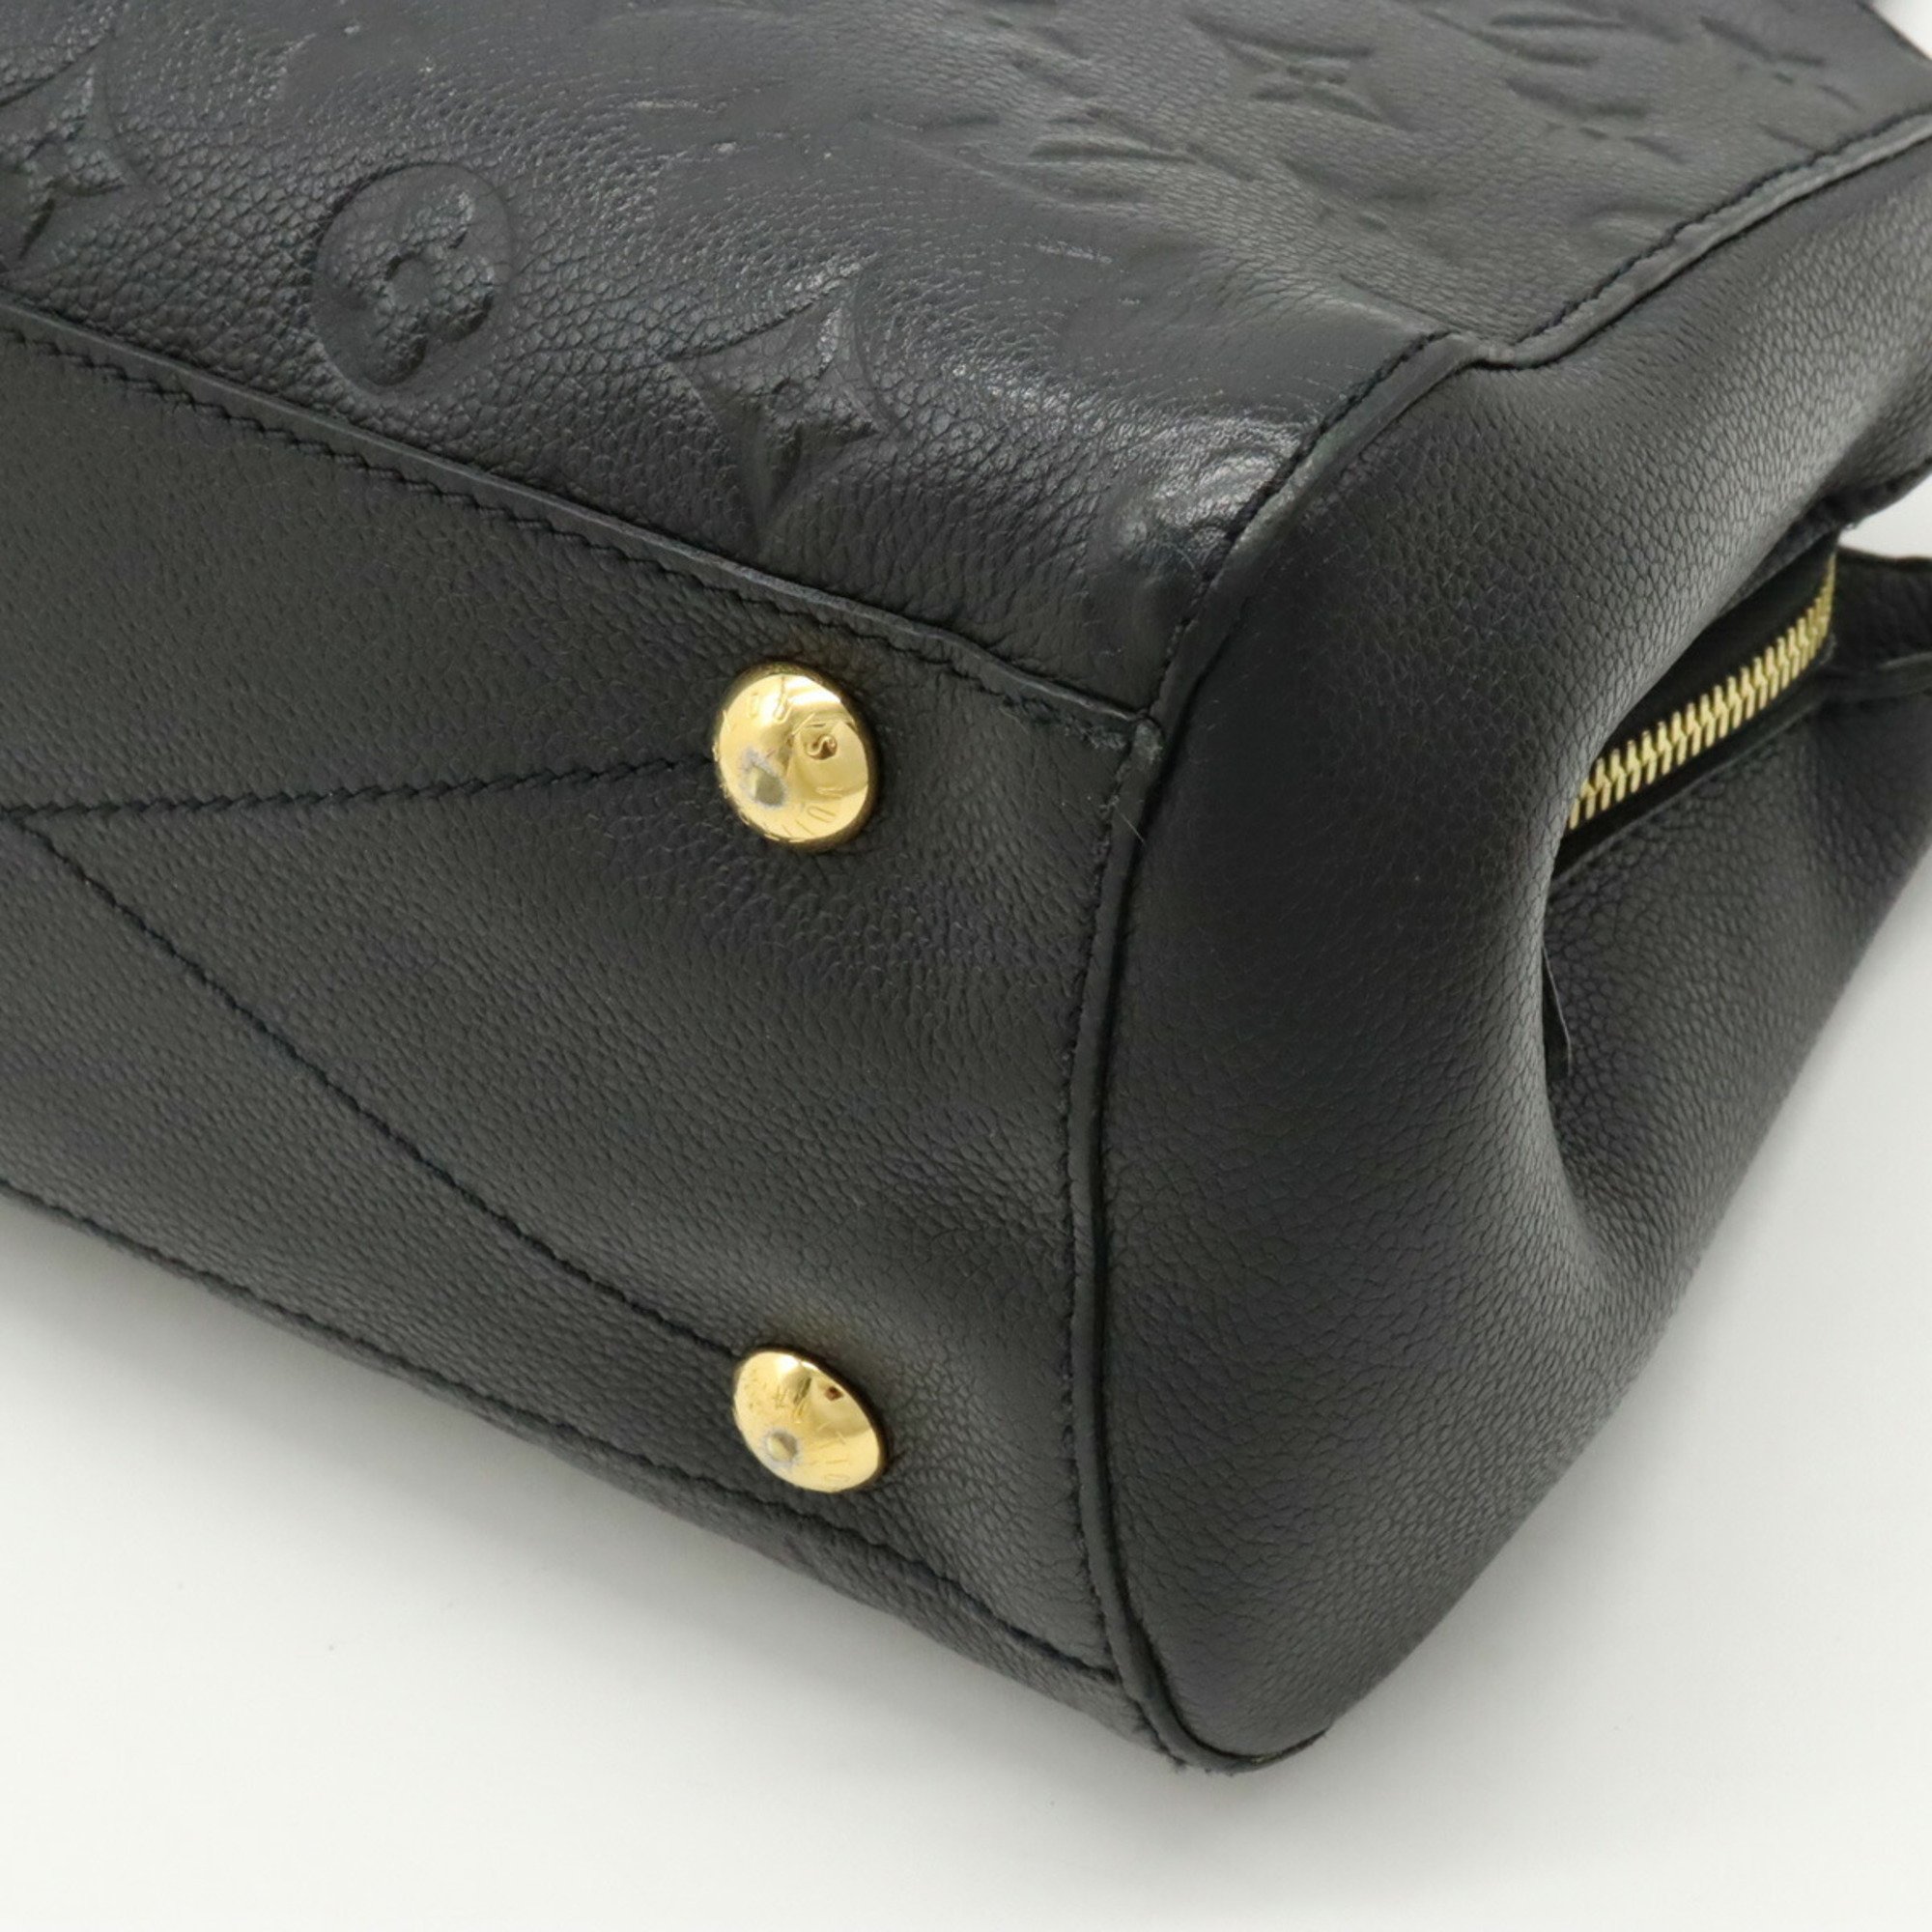 LOUIS VUITTON Louis Vuitton Monogram Empreinte Montaigne BB Handbag Shoulder Bag Noir Black M41053